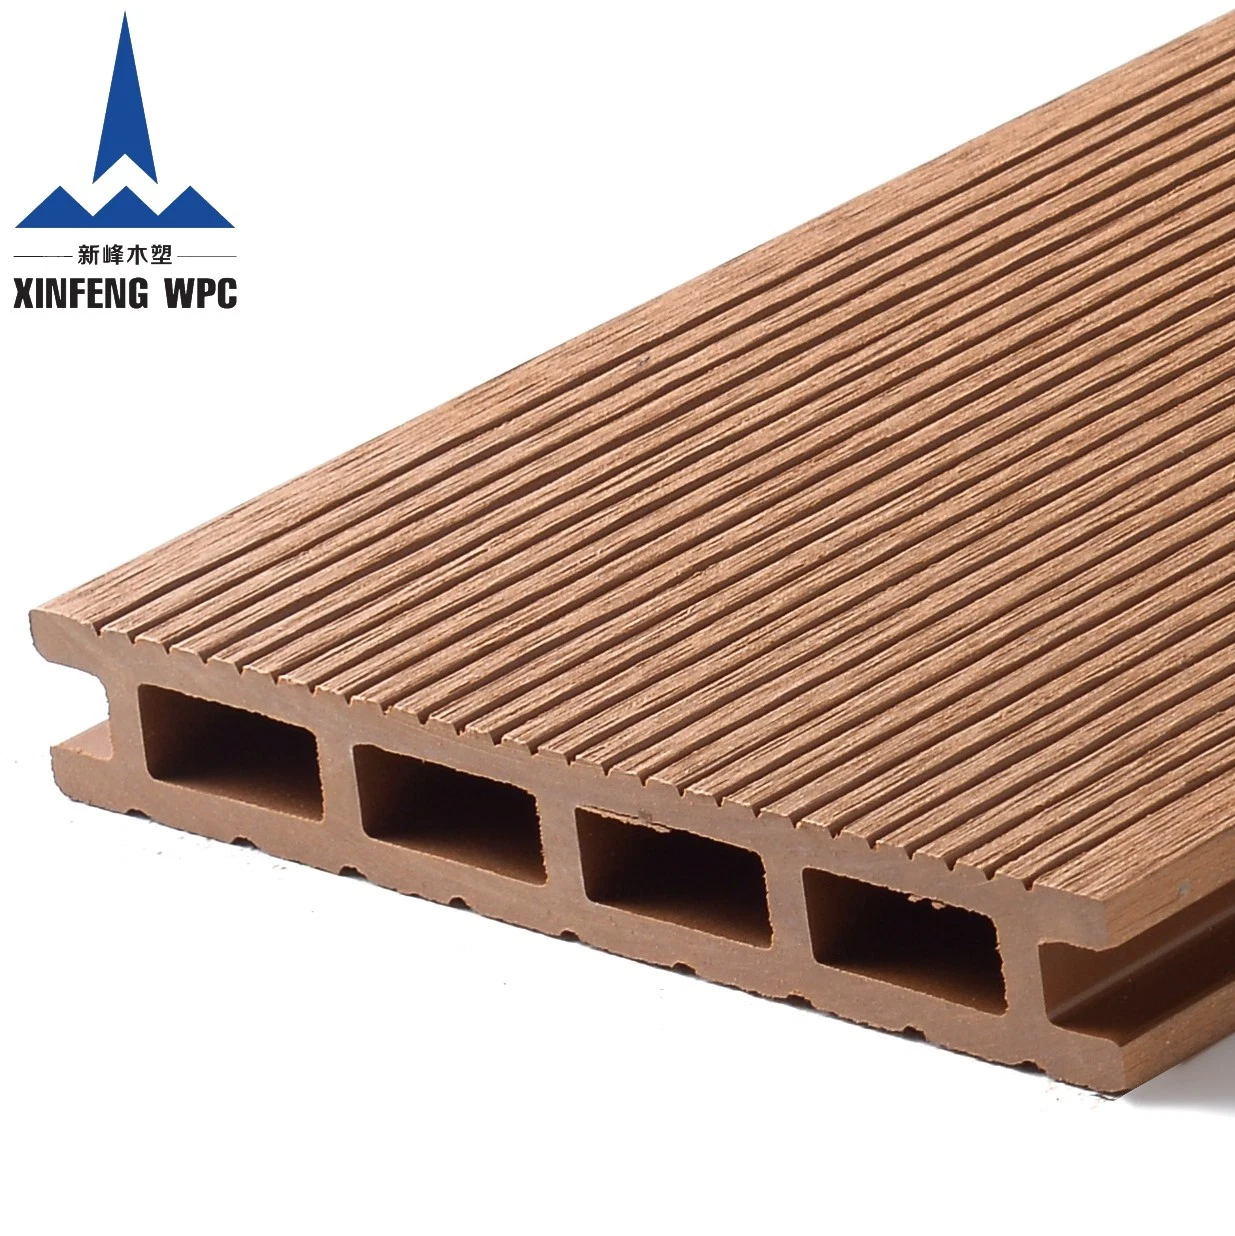 Compuesto de plástico madera materiales de construcción para revestimientos de suelos de exterior\